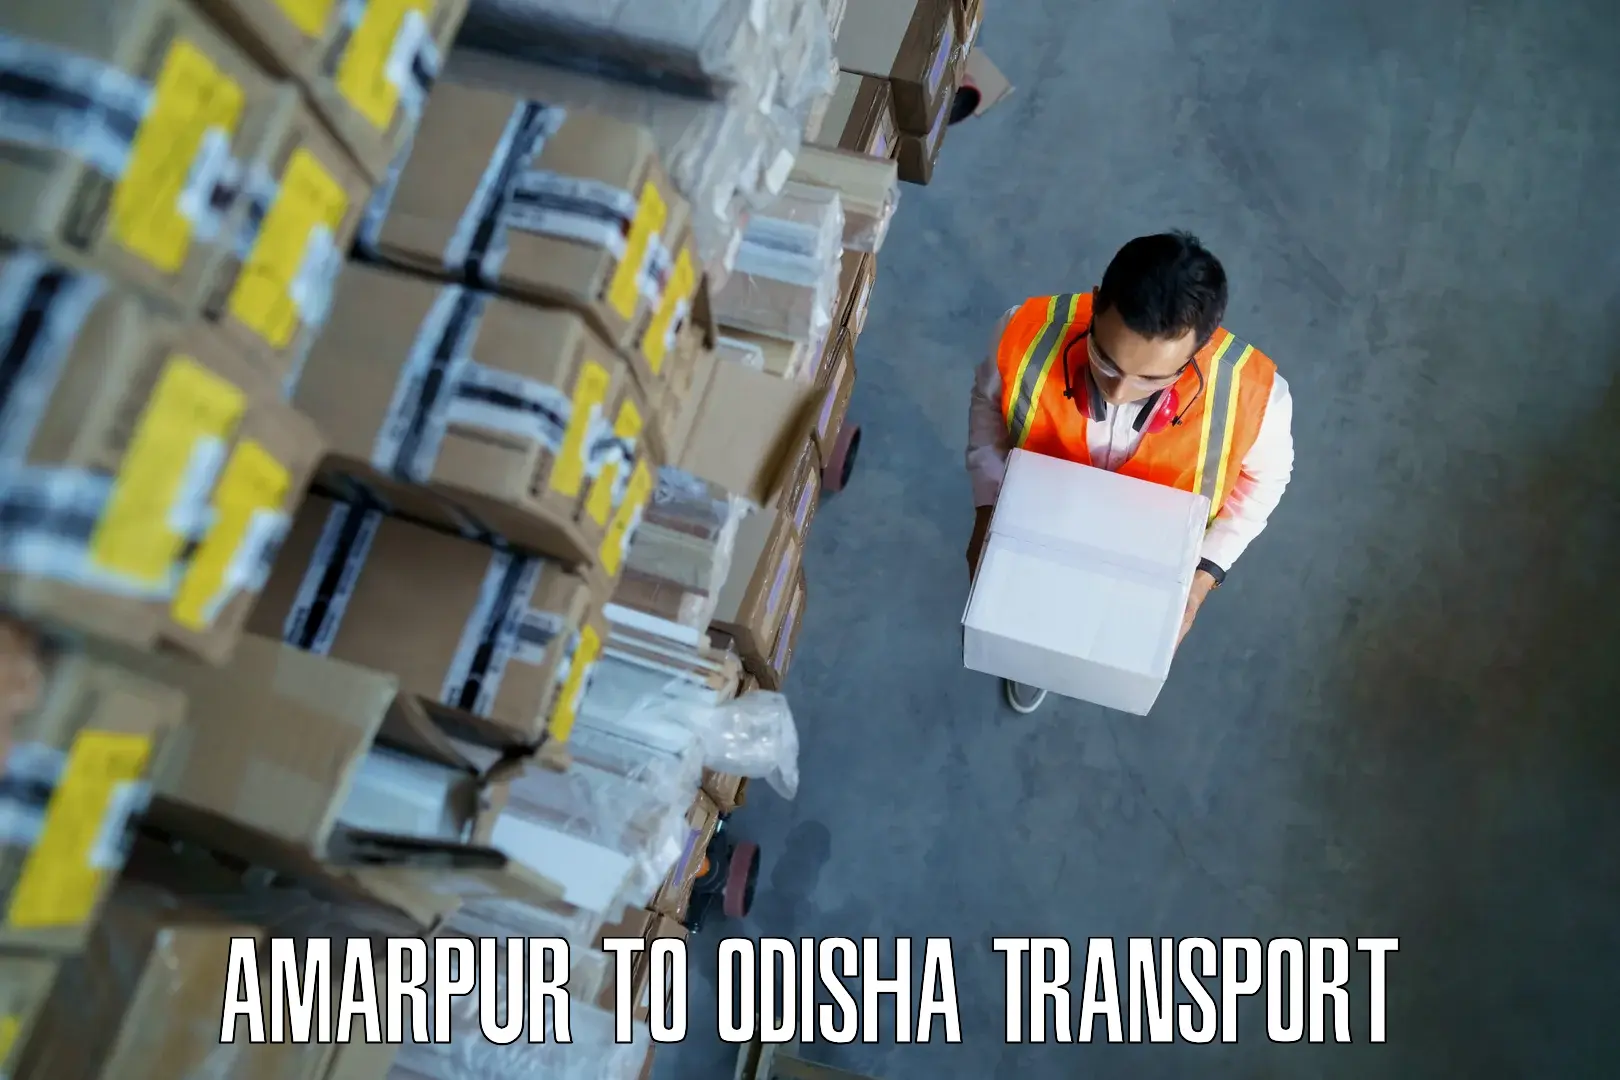 Online transport service Amarpur to Kosagumuda